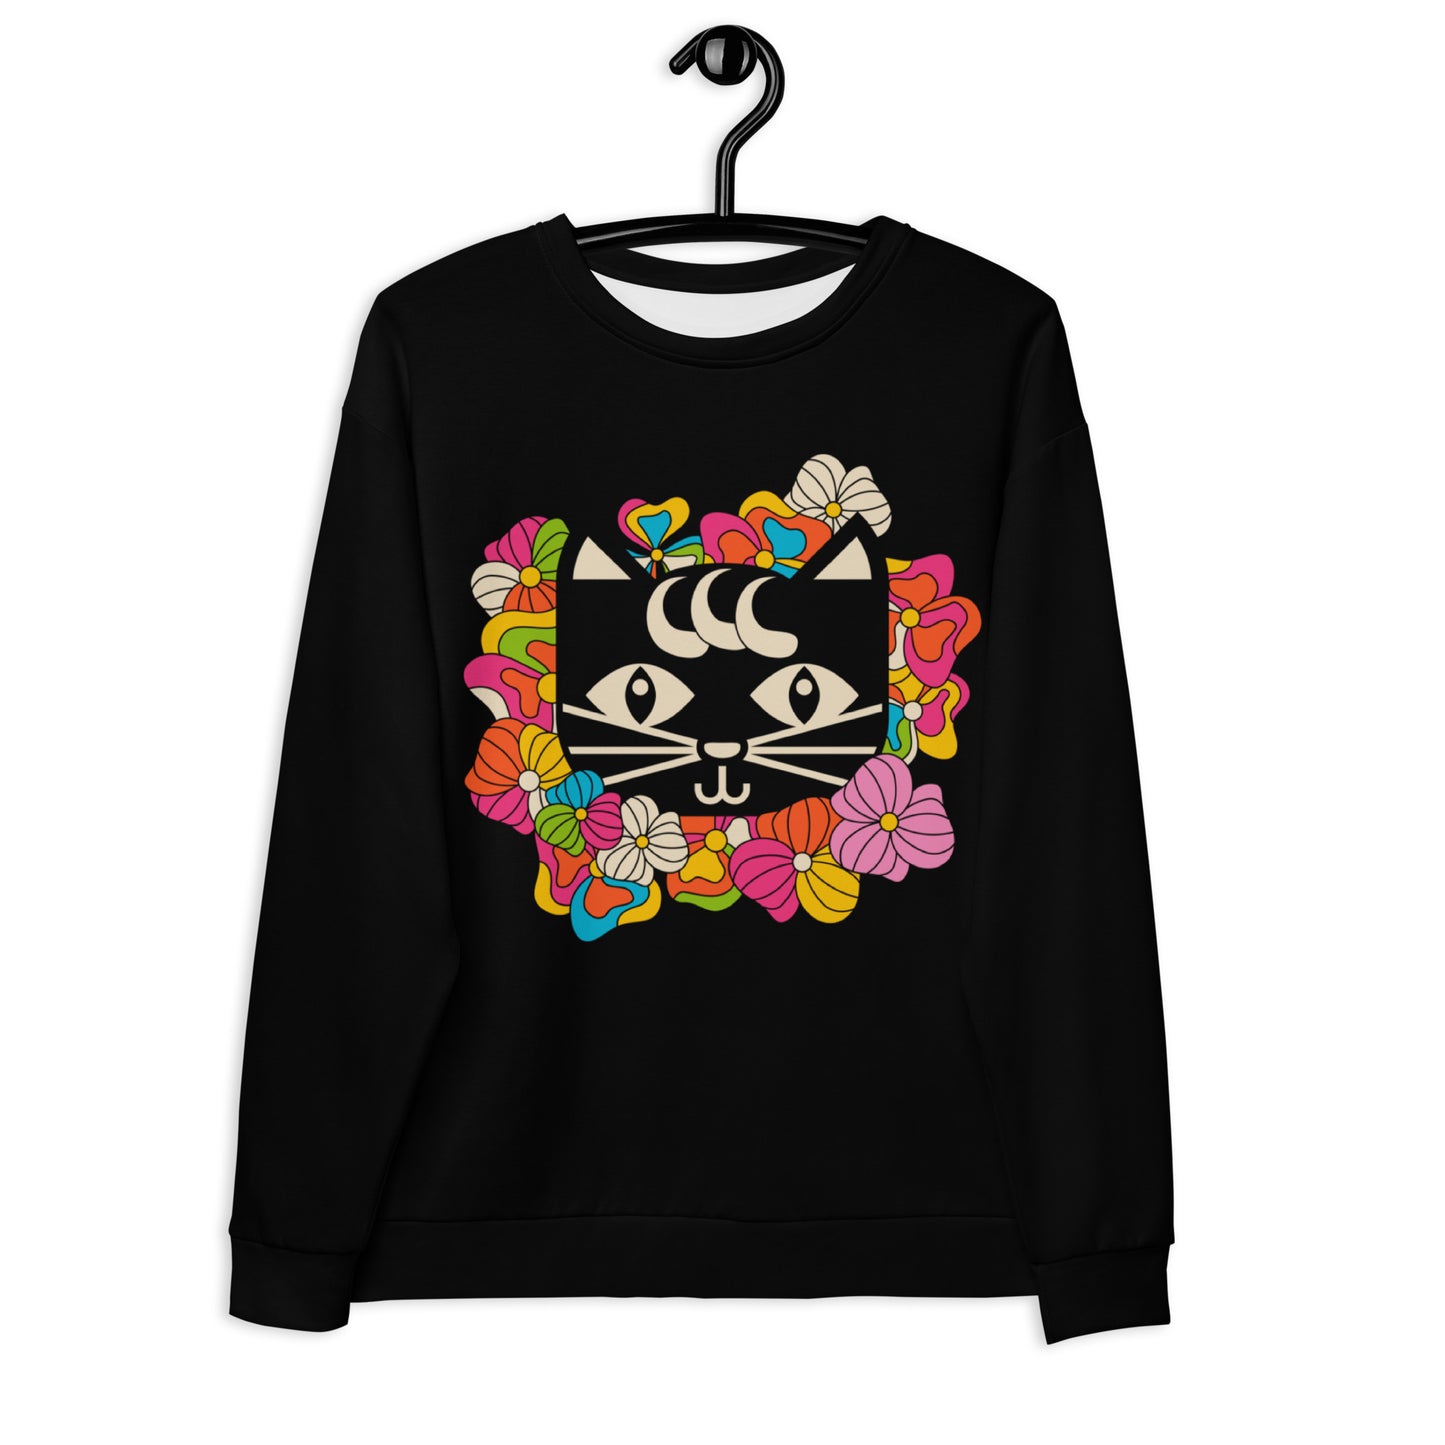 MAGICAT black (just cat) - Unisex Sweatshirt